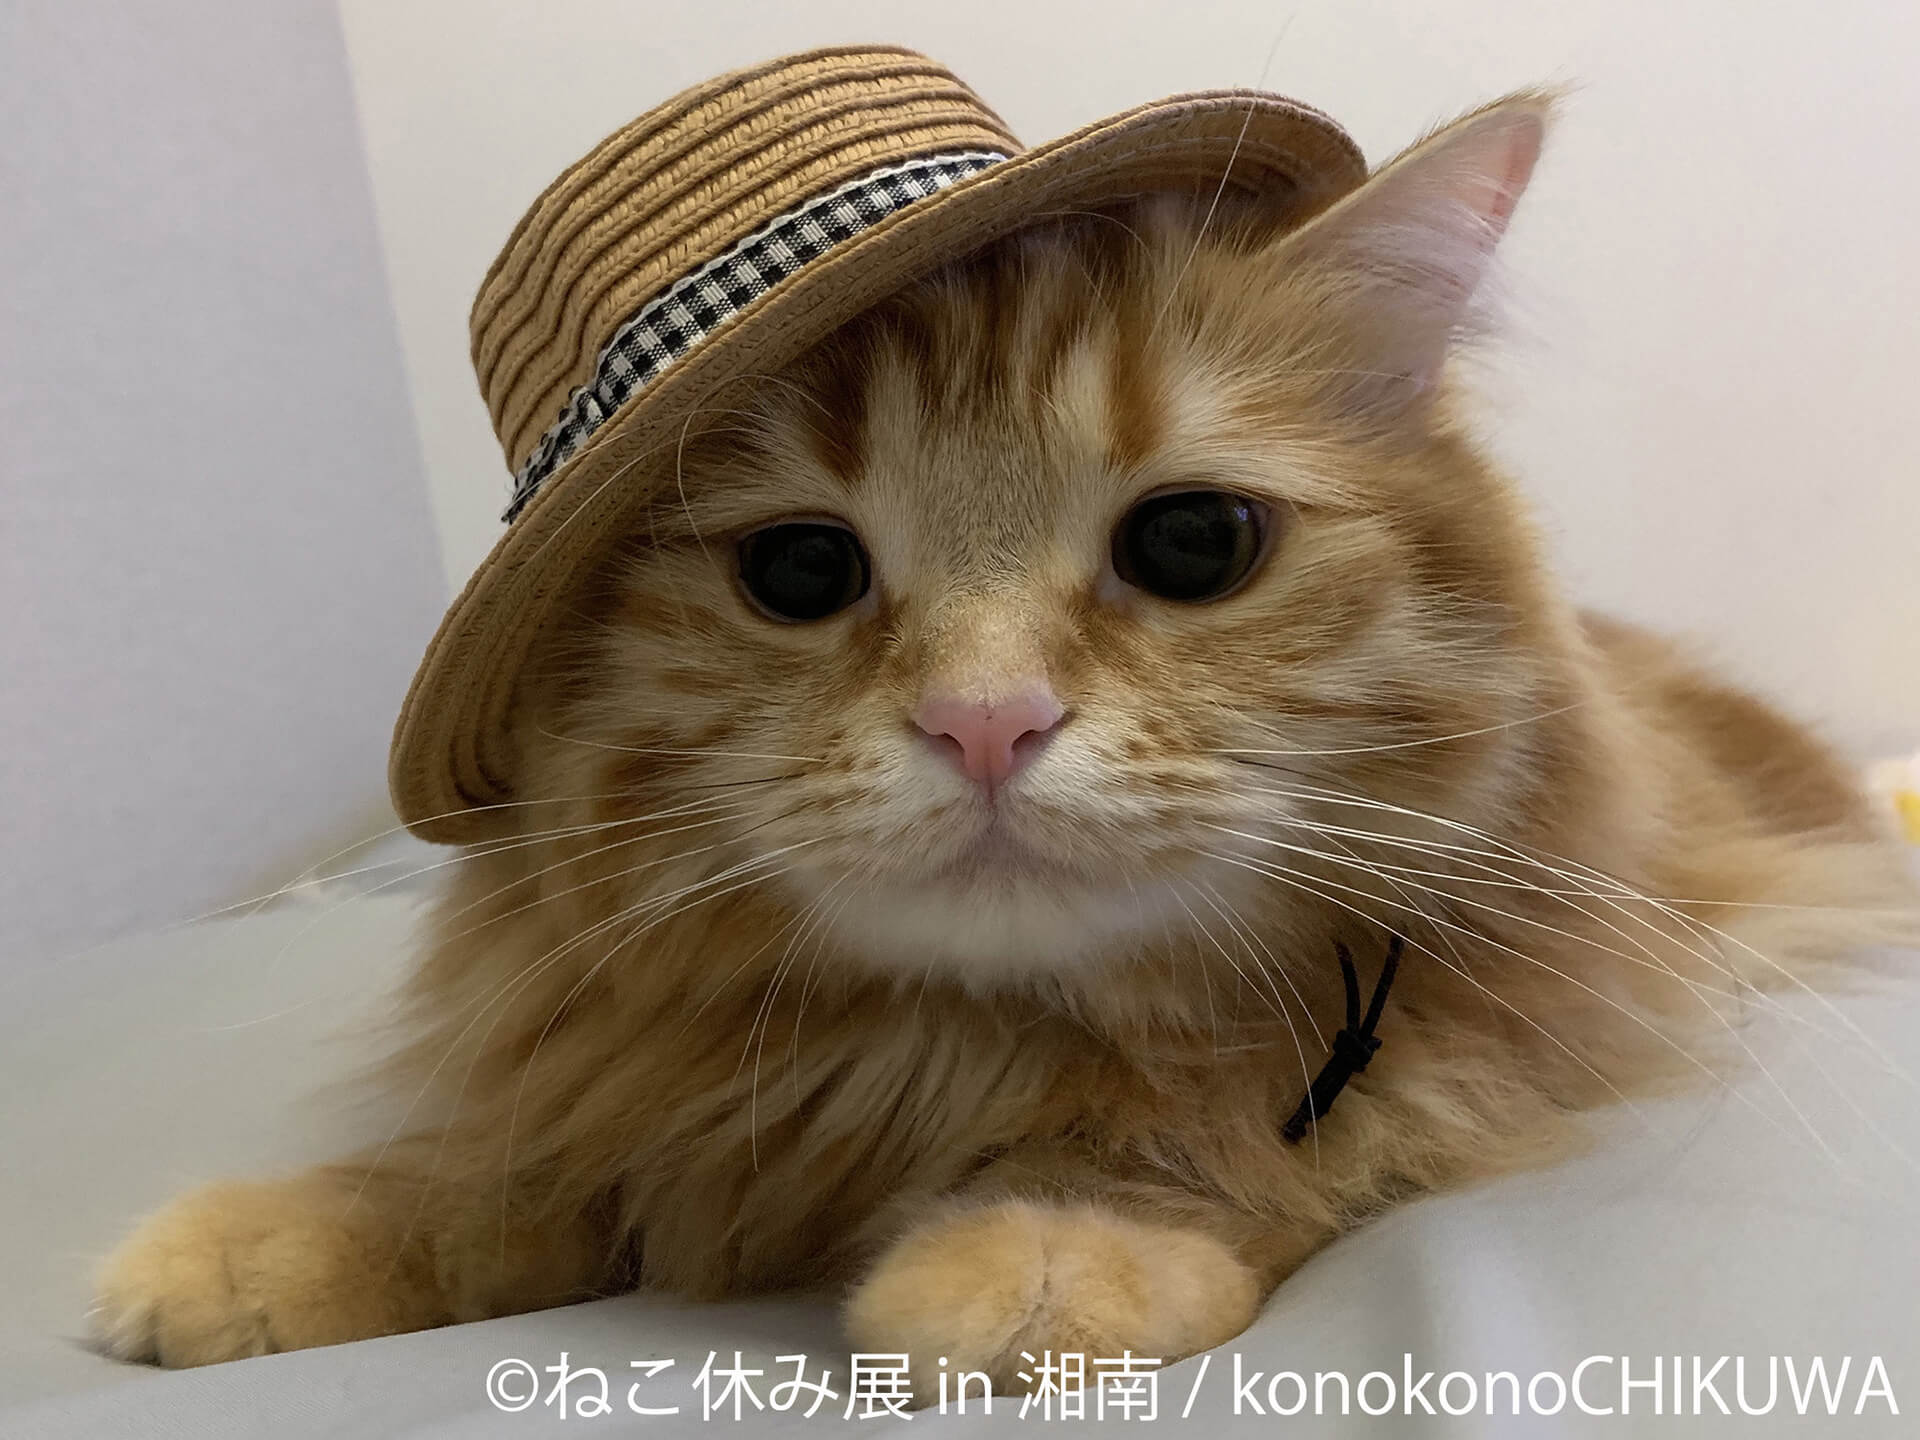 この写真はねこ休み展 in 湘南の展示作品で、帽子を斜めがけする猫です